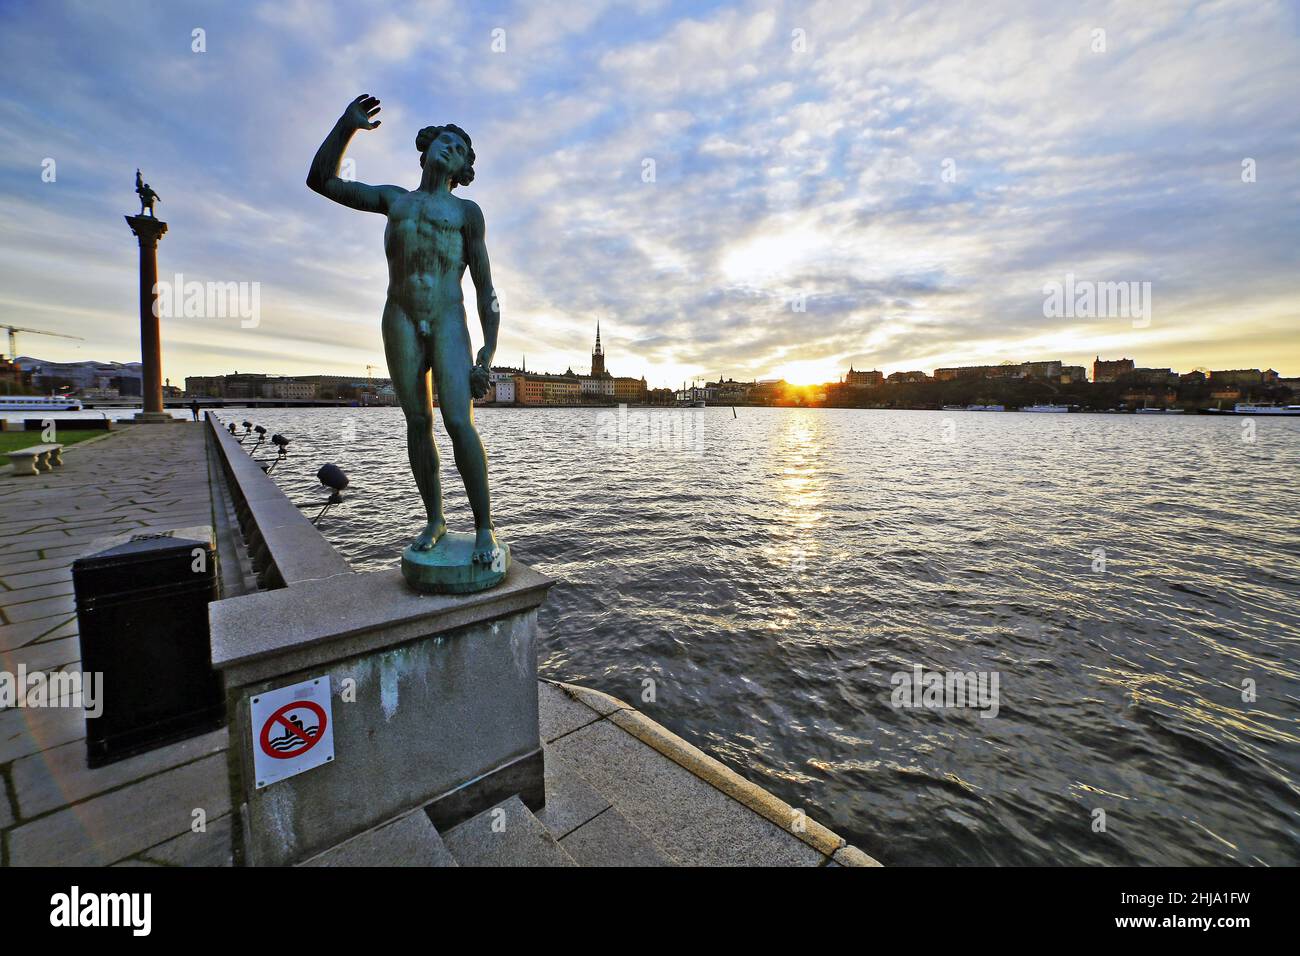 Stadshus Stoccolma statua del municipio e il tramonto sul canale. Stoccolma Svezia Foto Stock